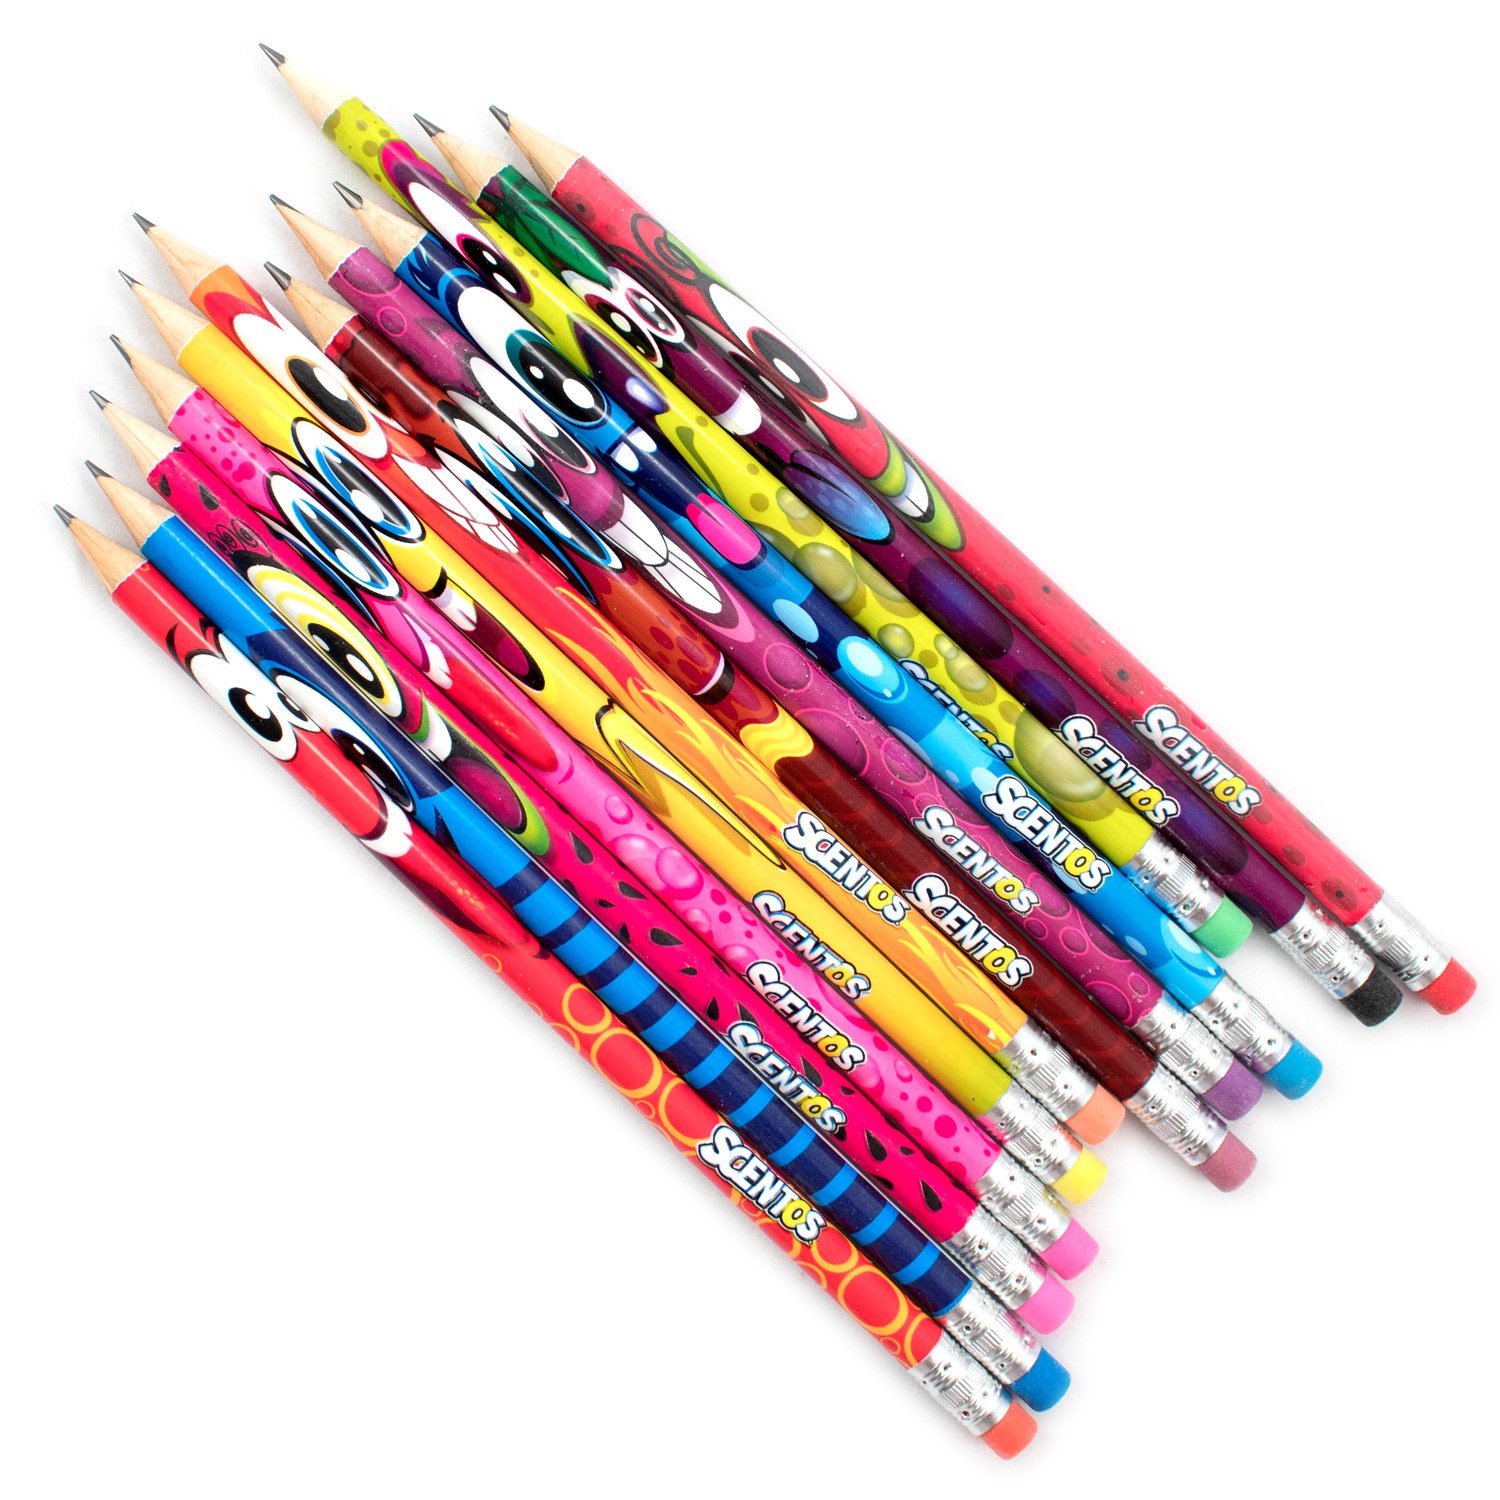 Простые карандаши отзывы. Ароматизированные карандаши. Карандаш ароматизированный. Простые карандаши Leo 12 шт. Карандаши Scento 24шт.